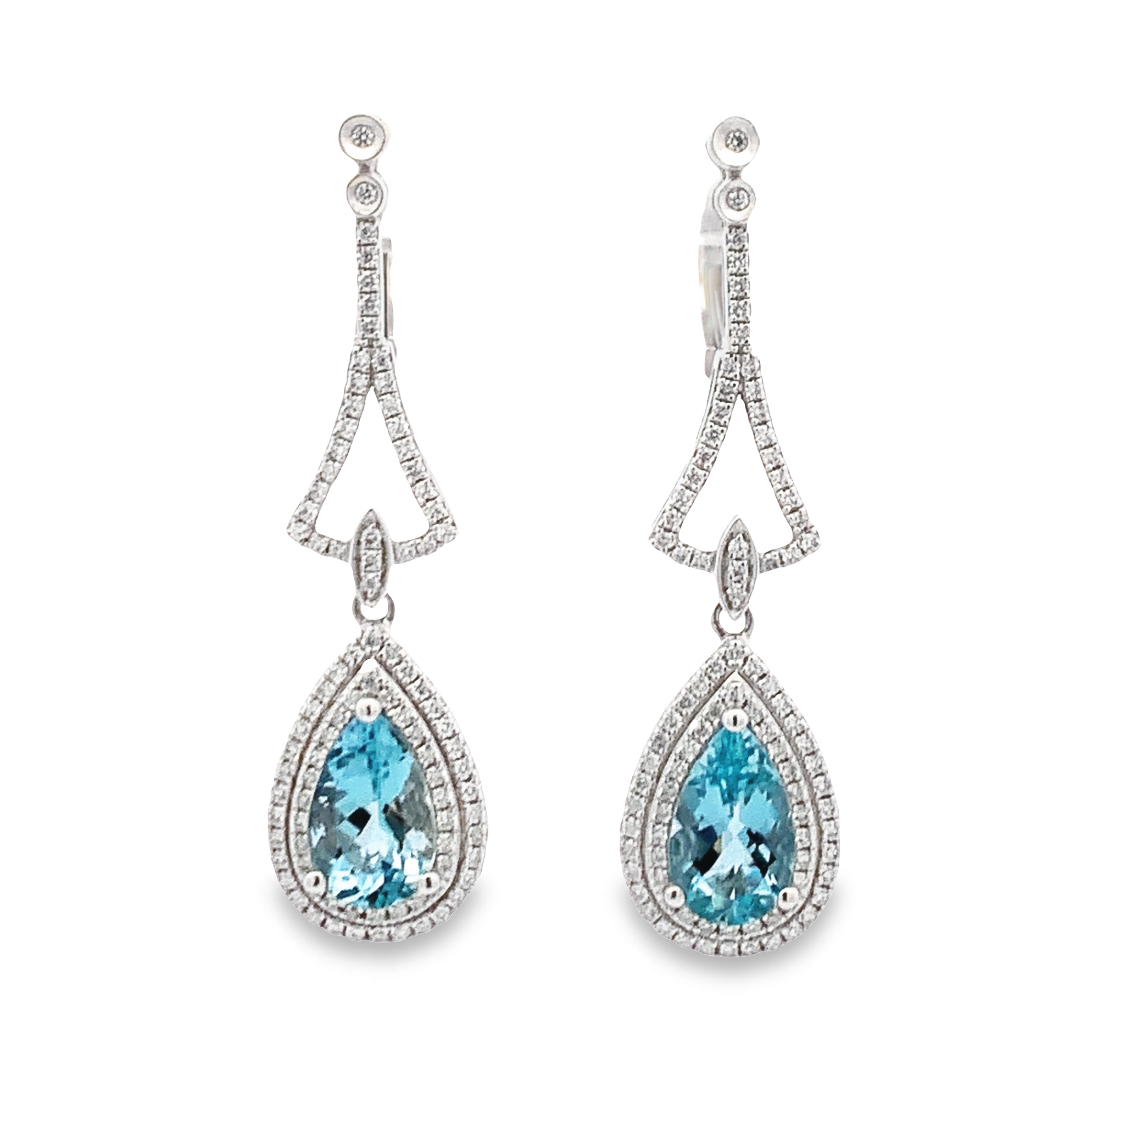 Diamond Fashion Earrings for Women, Girls in Bridgewater, NJ